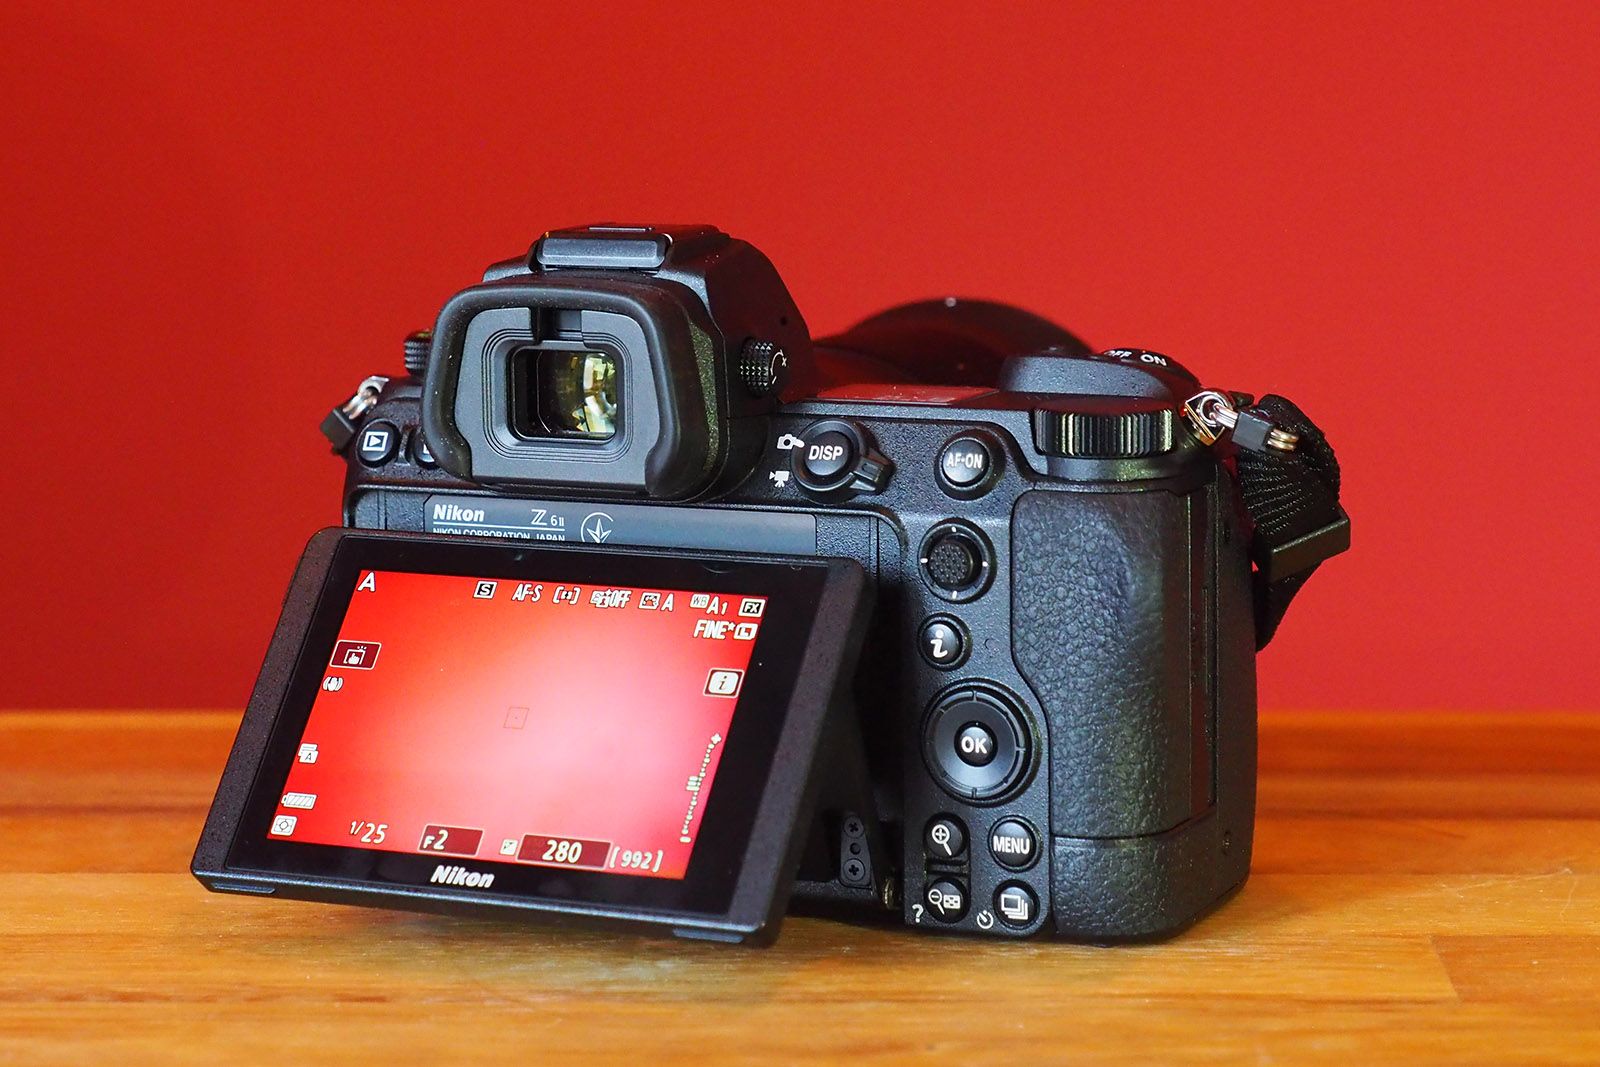 Probamos: review y opiniones de la Nikon Z6 II sobre el terreno